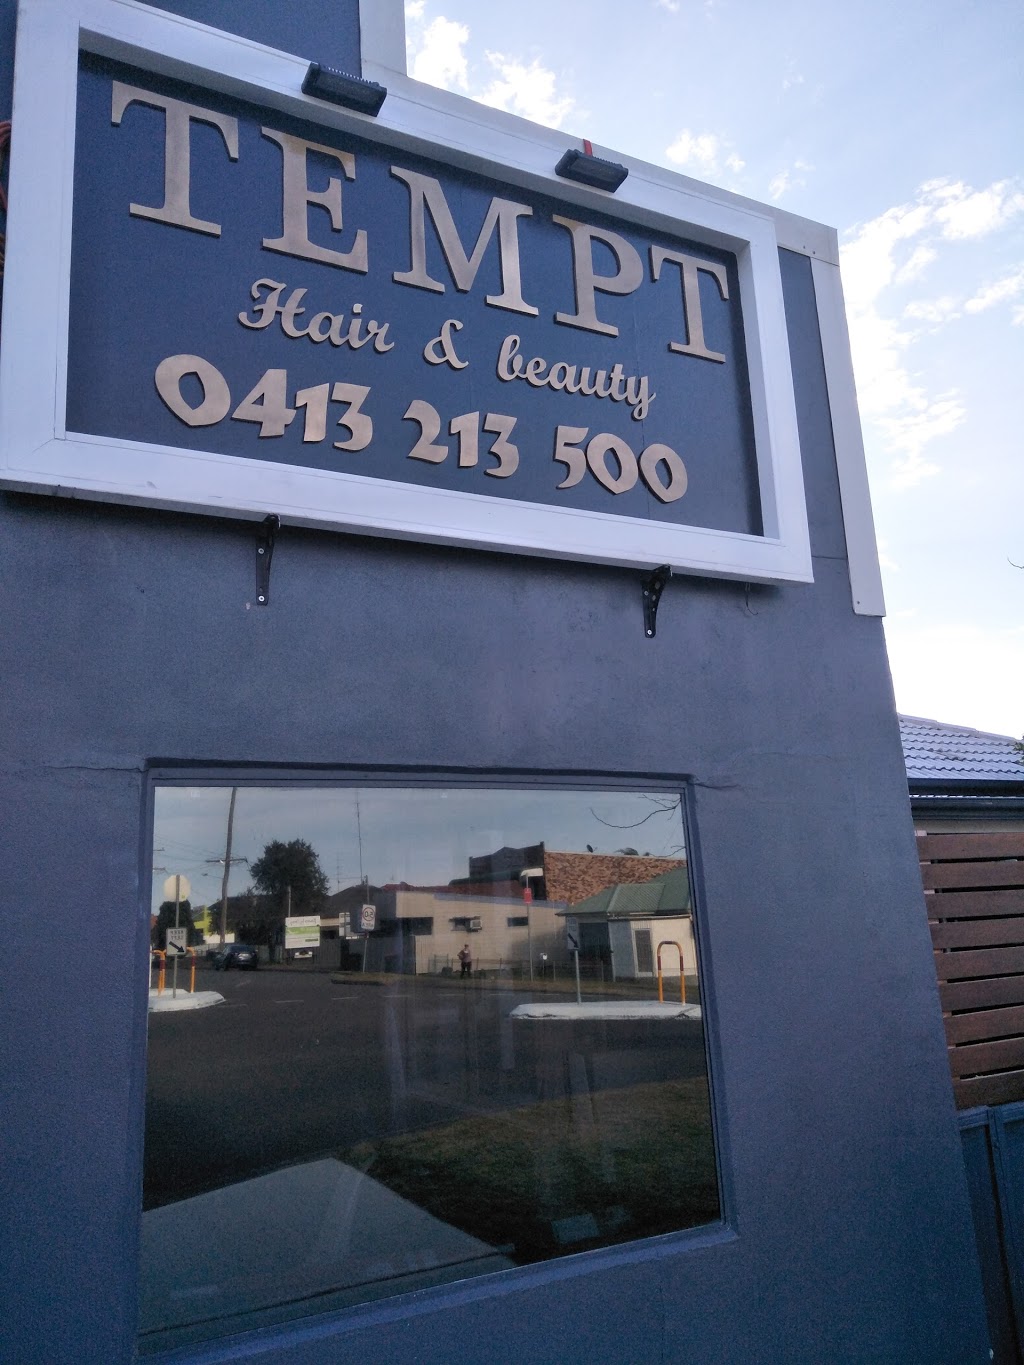 Tempt Hair & beauty | hair care | 91A Wallsend St, Kahibah NSW 2290, Australia | 0413213500 OR +61 413 213 500